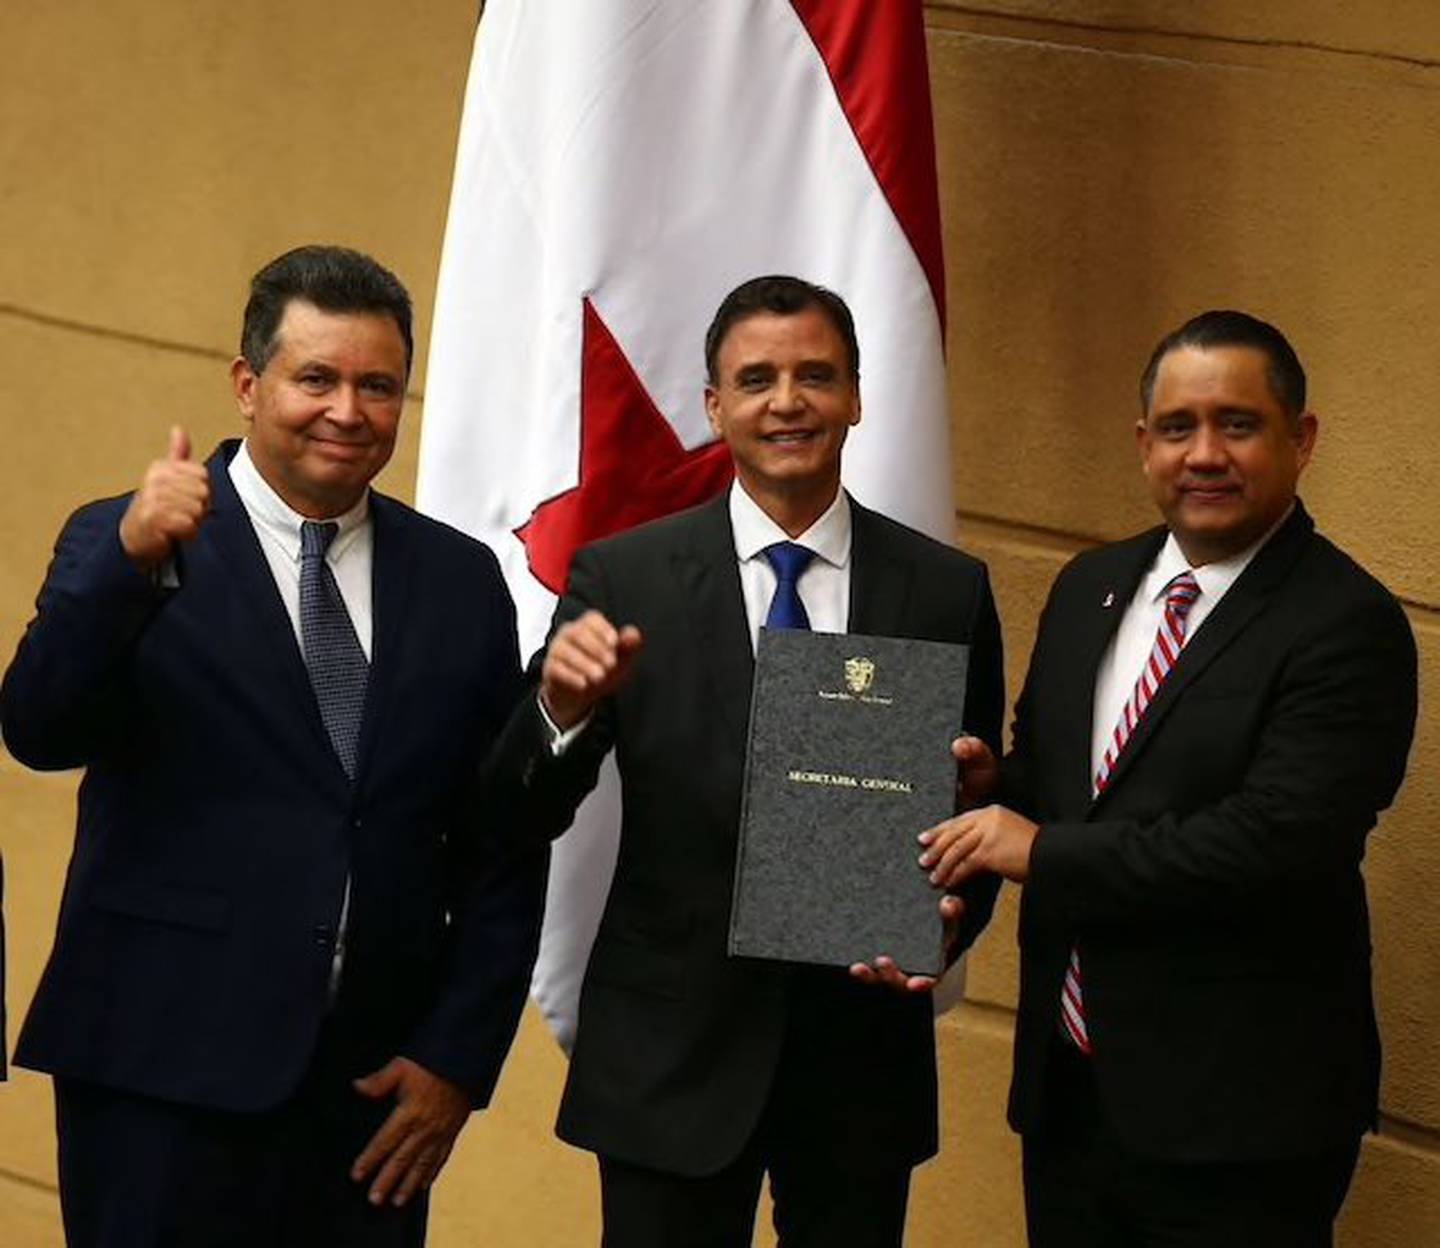 En Panamá los diputados nombran al contralor, el diputado Robinson  -quien tiene el control político de la Asamblea- lideró el nombramiento de Solís.dfd